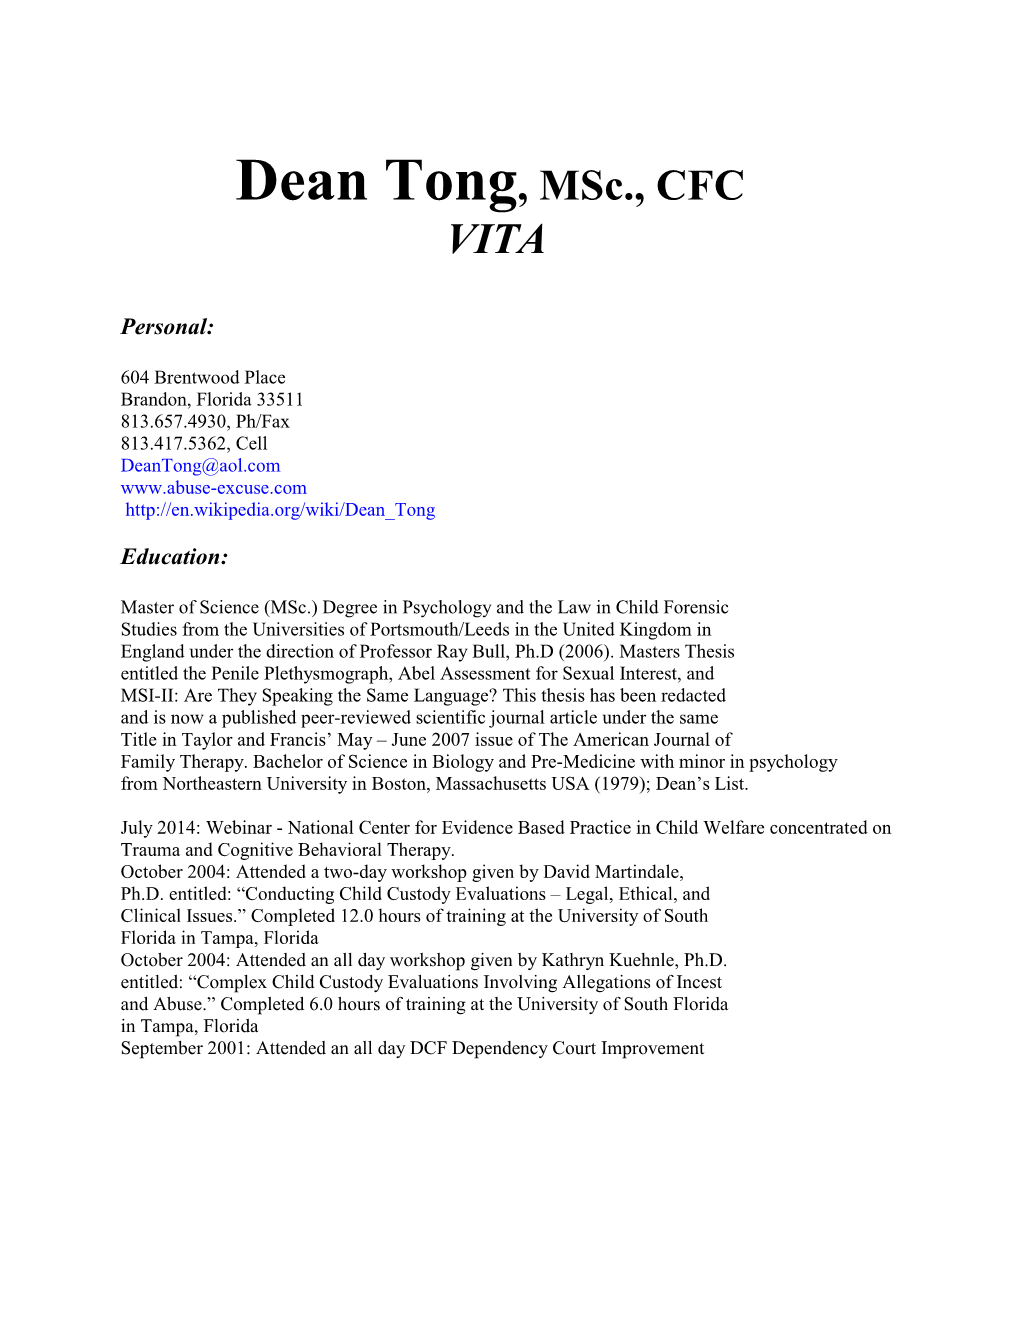 Dean Tong, Msc., CFC VITA